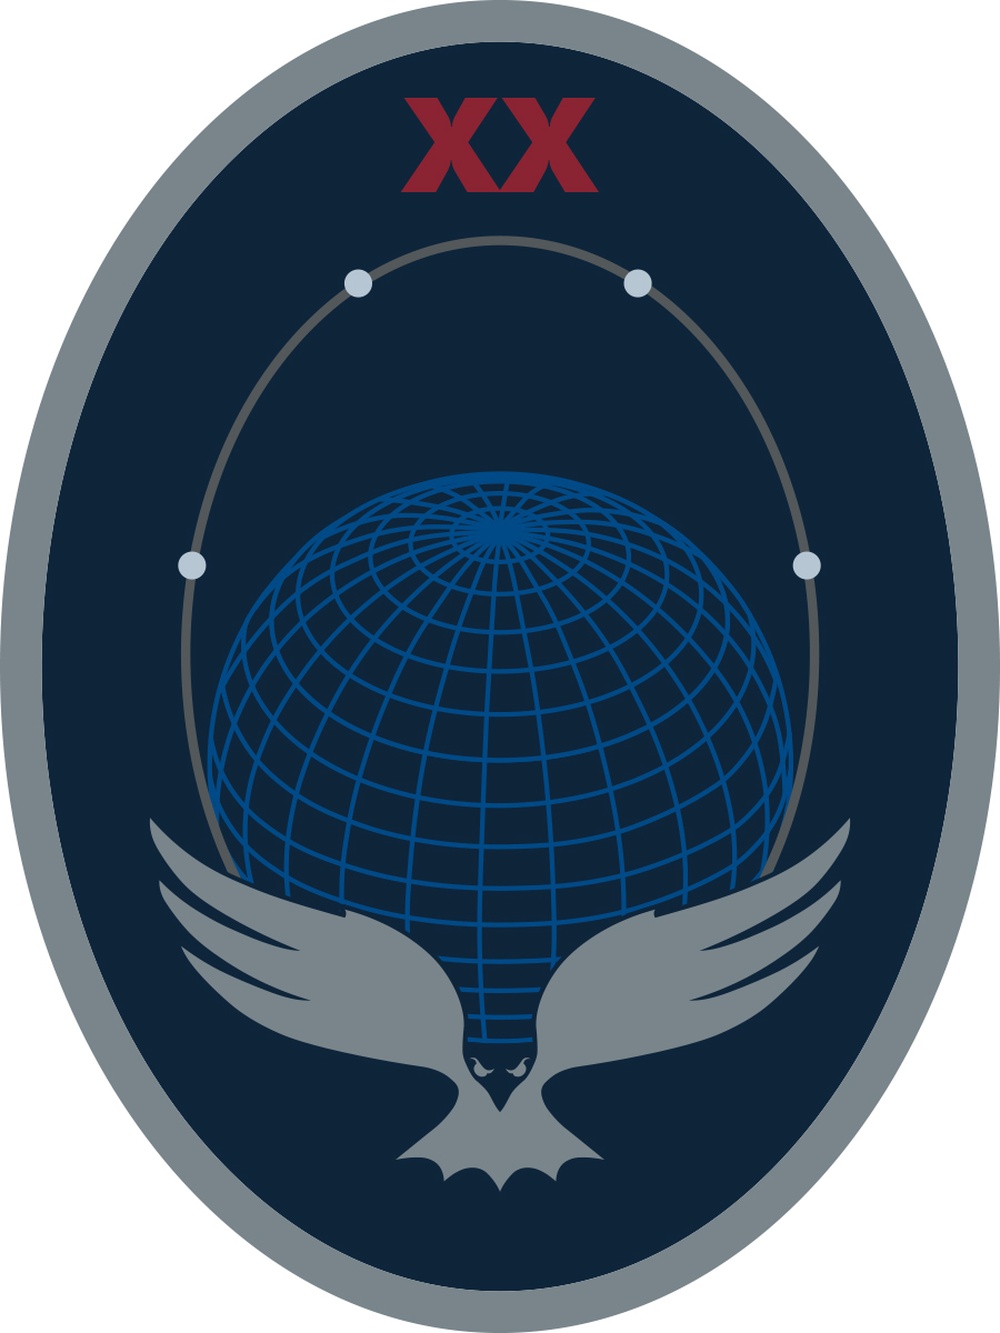 20 SPCS - Official Emblem